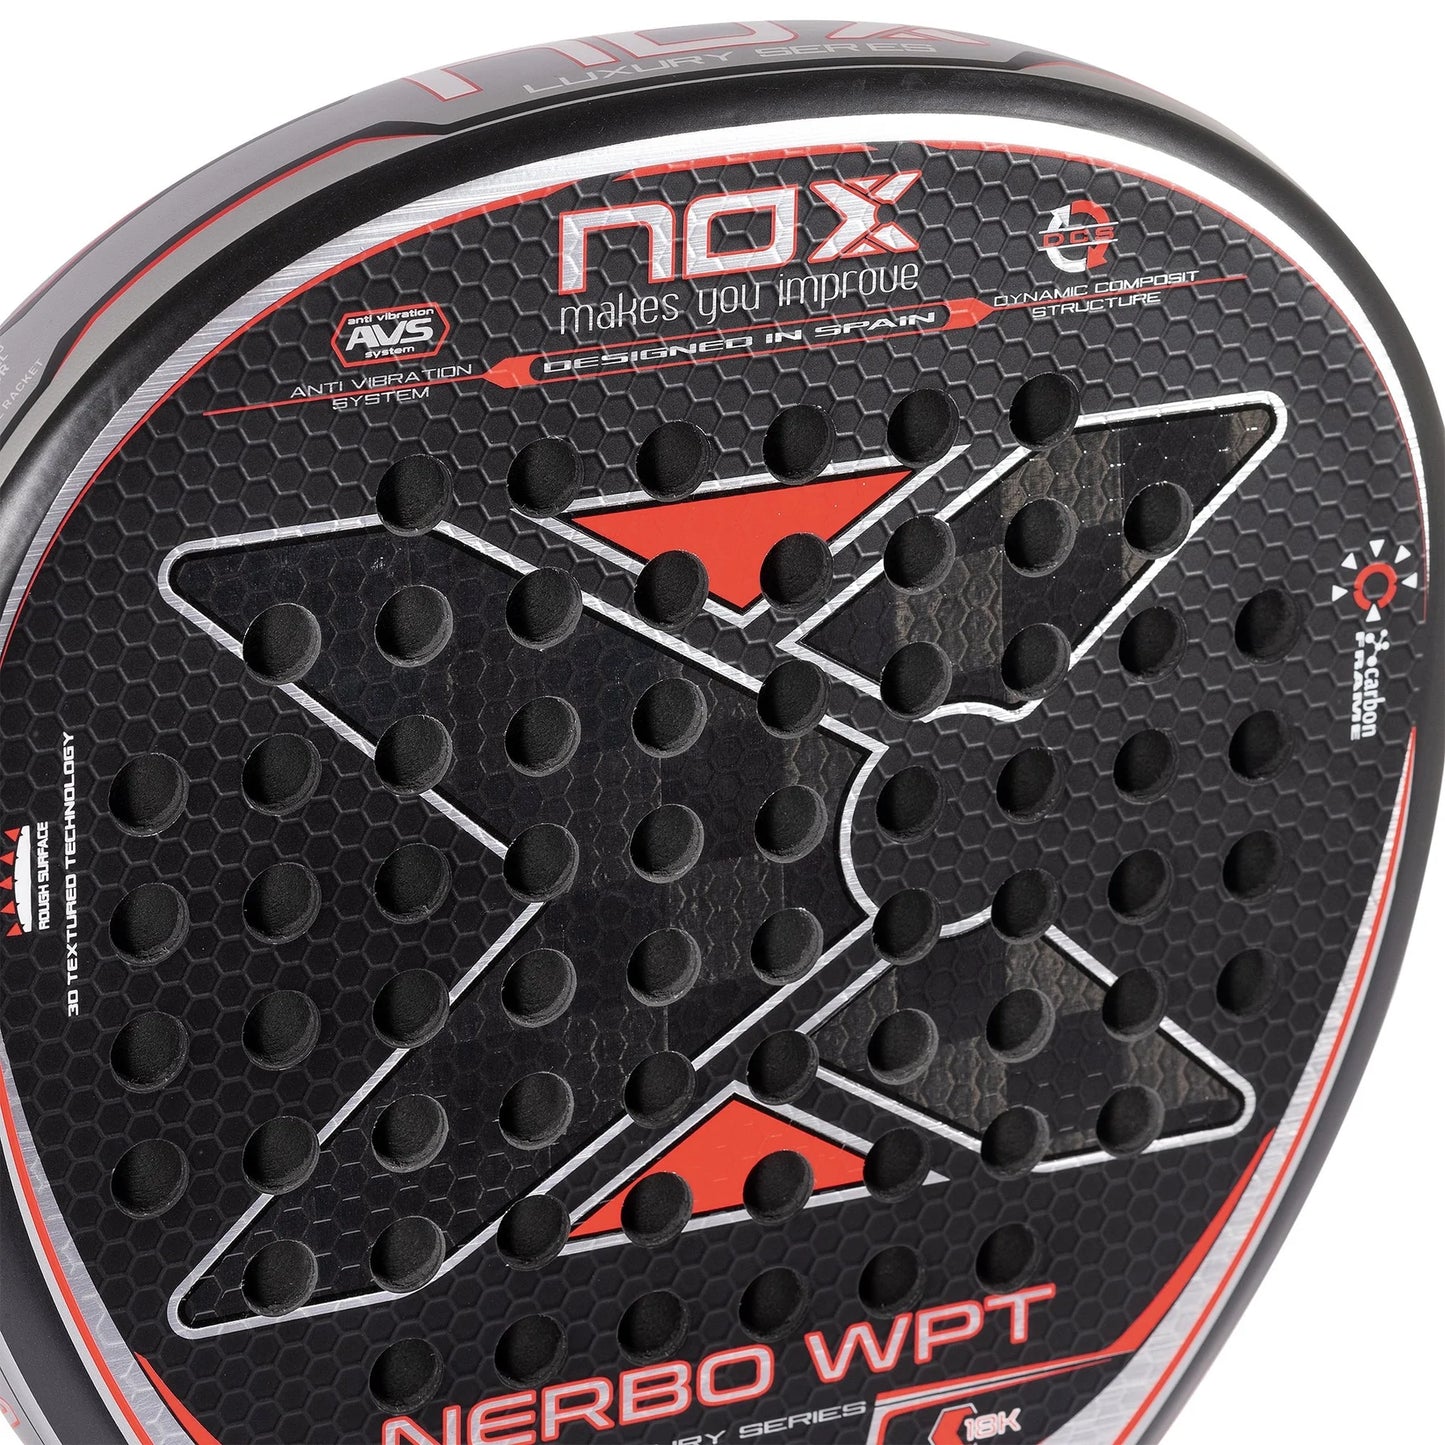 Nox Nerbo WPT Luxury Series Padel Racket